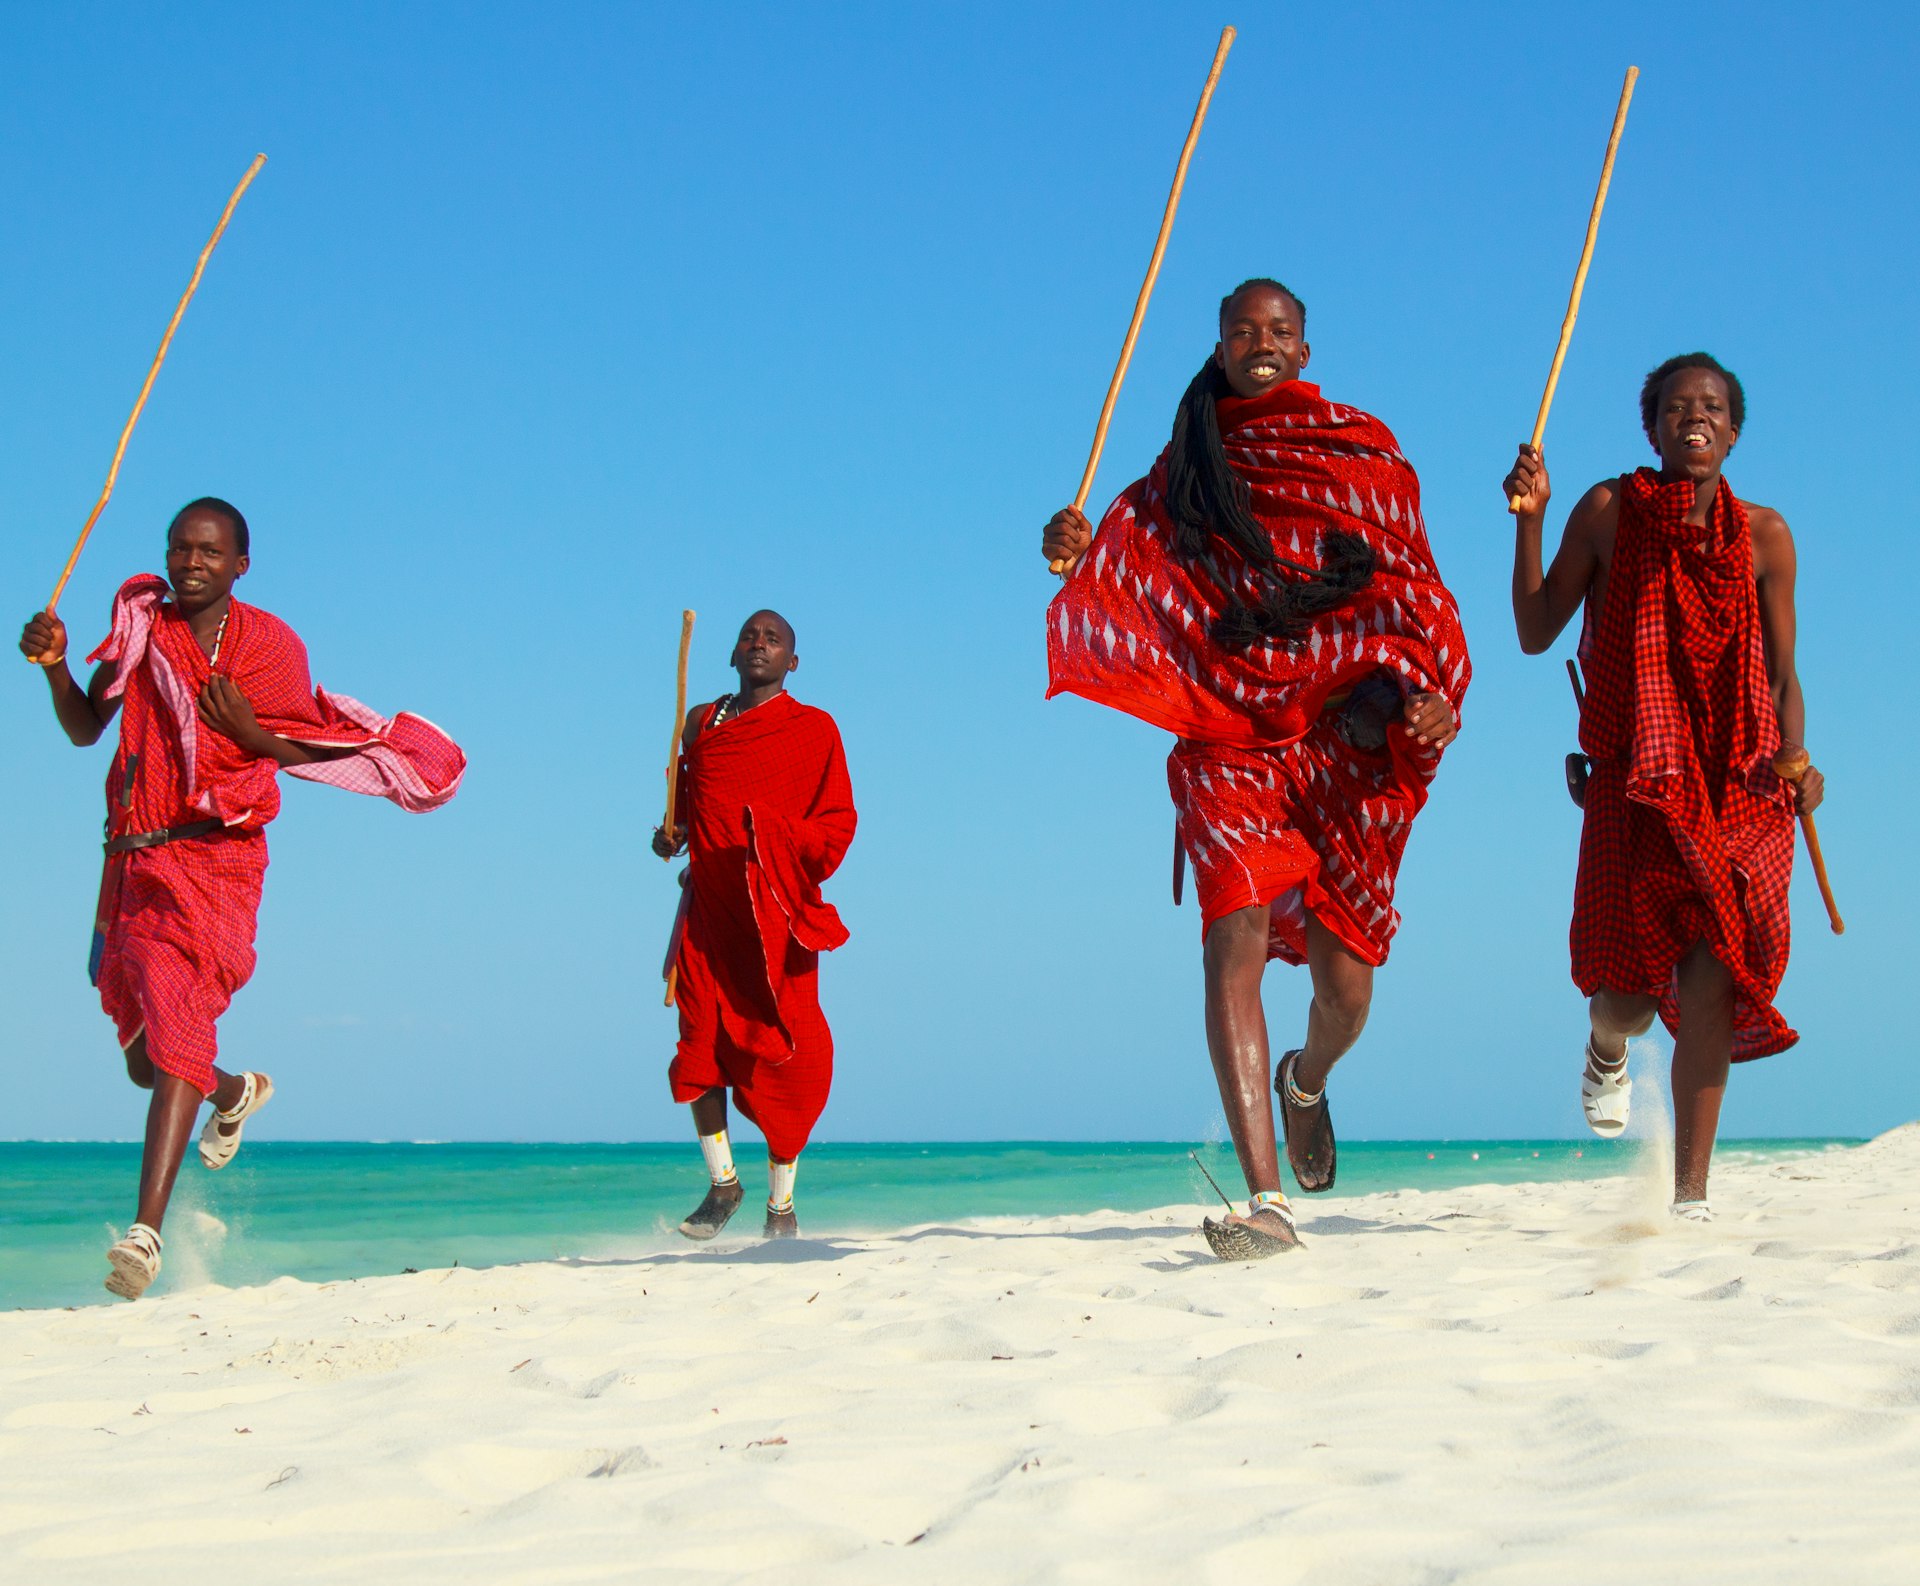 4 Maasai warriors, wearing red, holding sticks, jumping on a beach in Zanzibarr